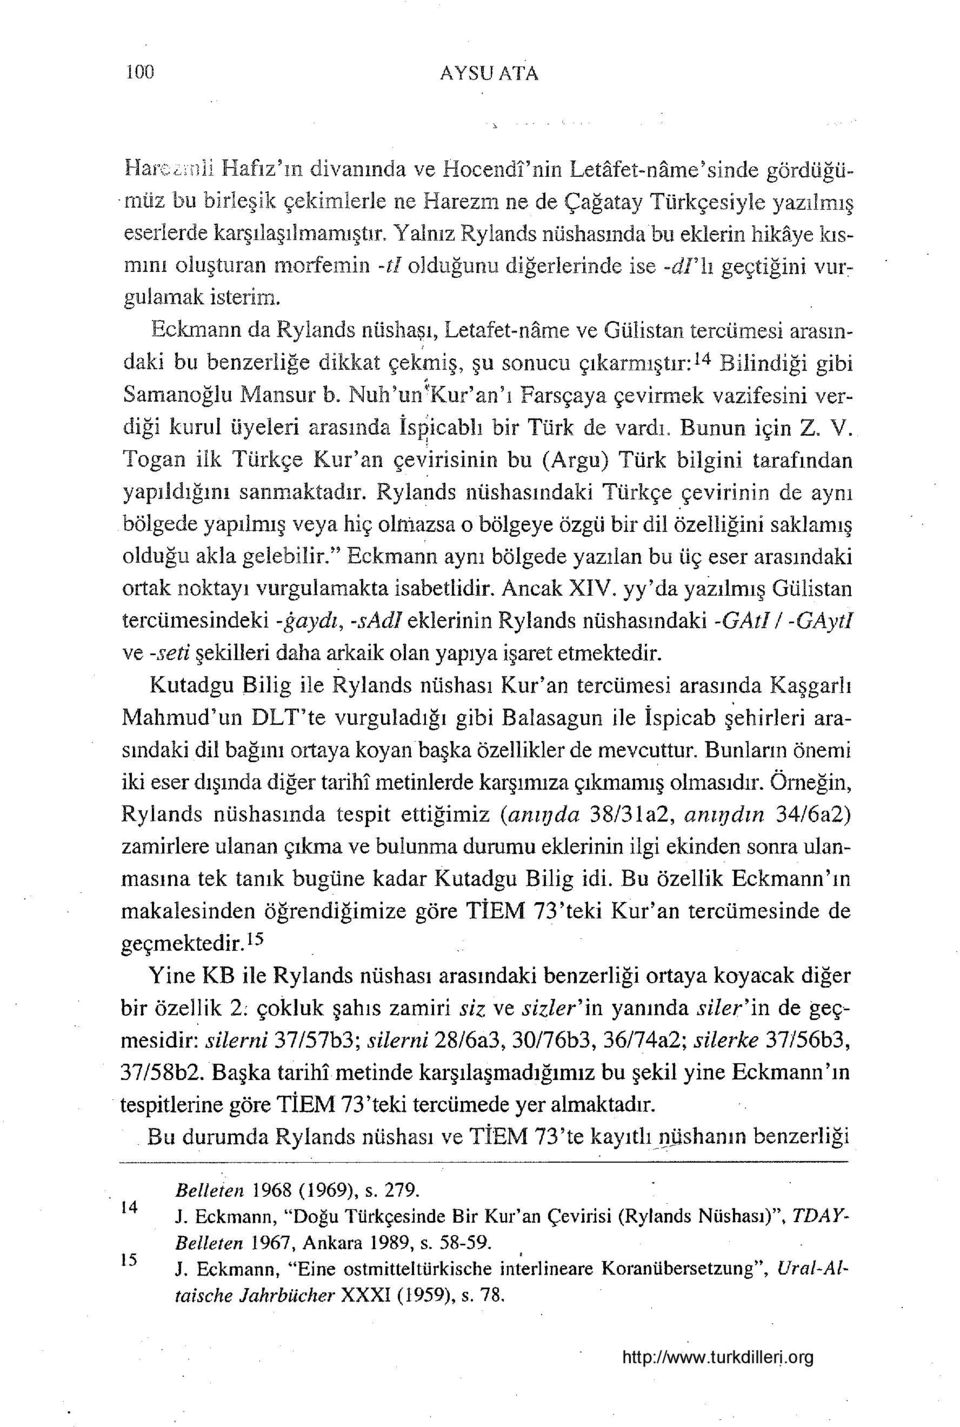 Eckmann da Rylands nüsha~ı, Letafet-name ve Gülİstan tercümesi arasındaki bu benzerliğe dikkat çekmiş, şu sonucu çıkarmıştır: 14 Bilindiği gibi Samanoğlu Mansur b.